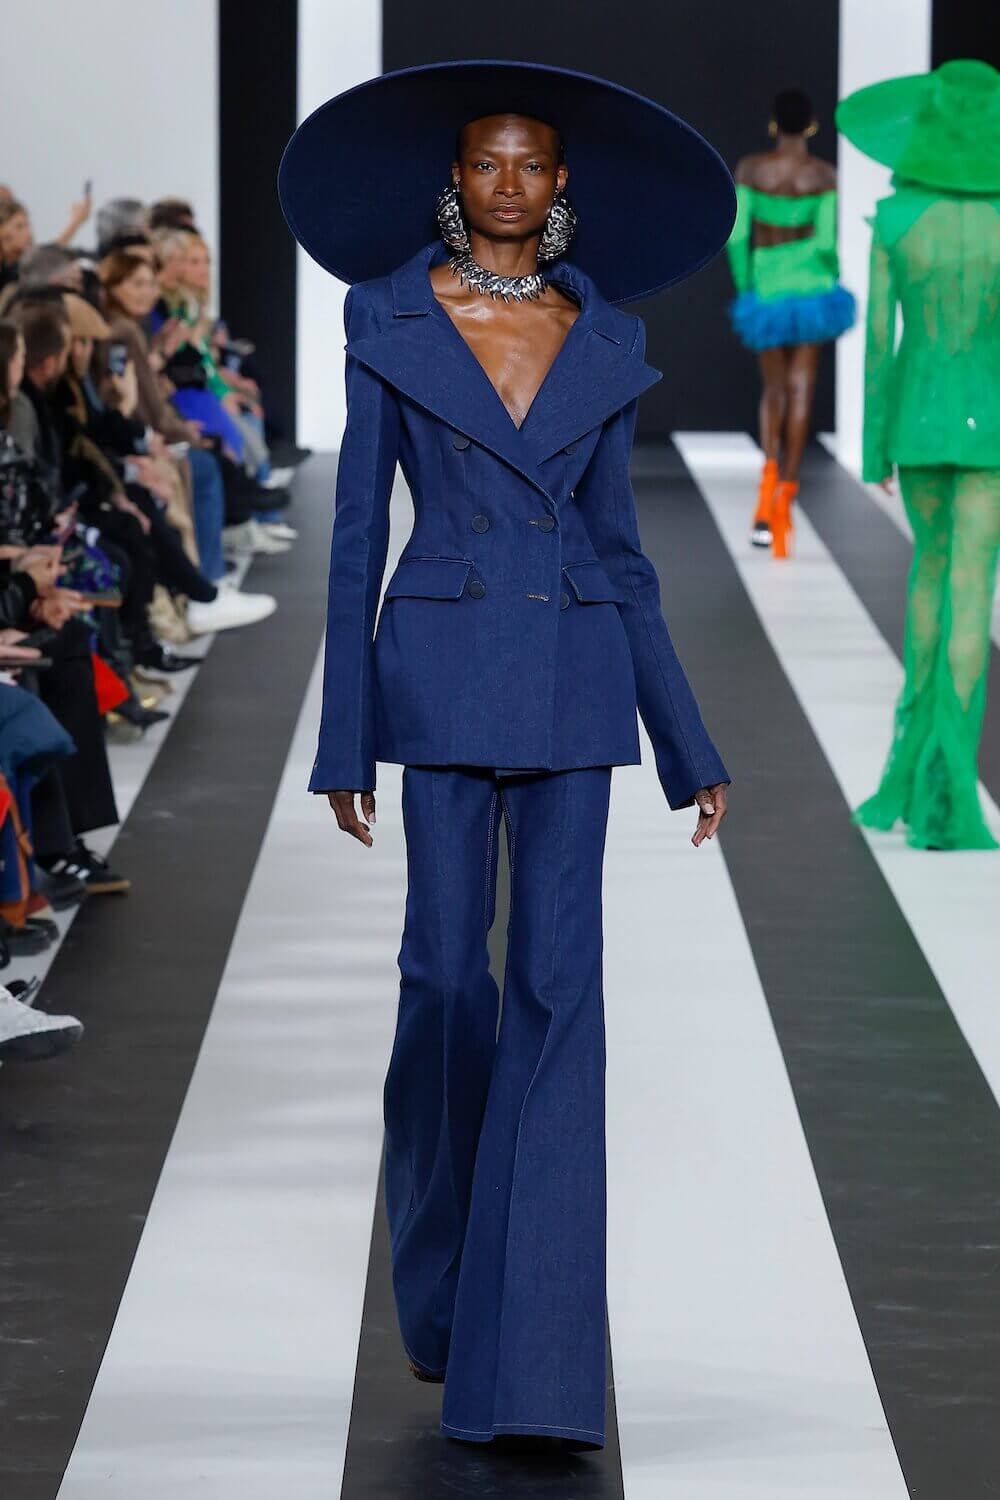 Women's tops - Fashion - Nina Ricci